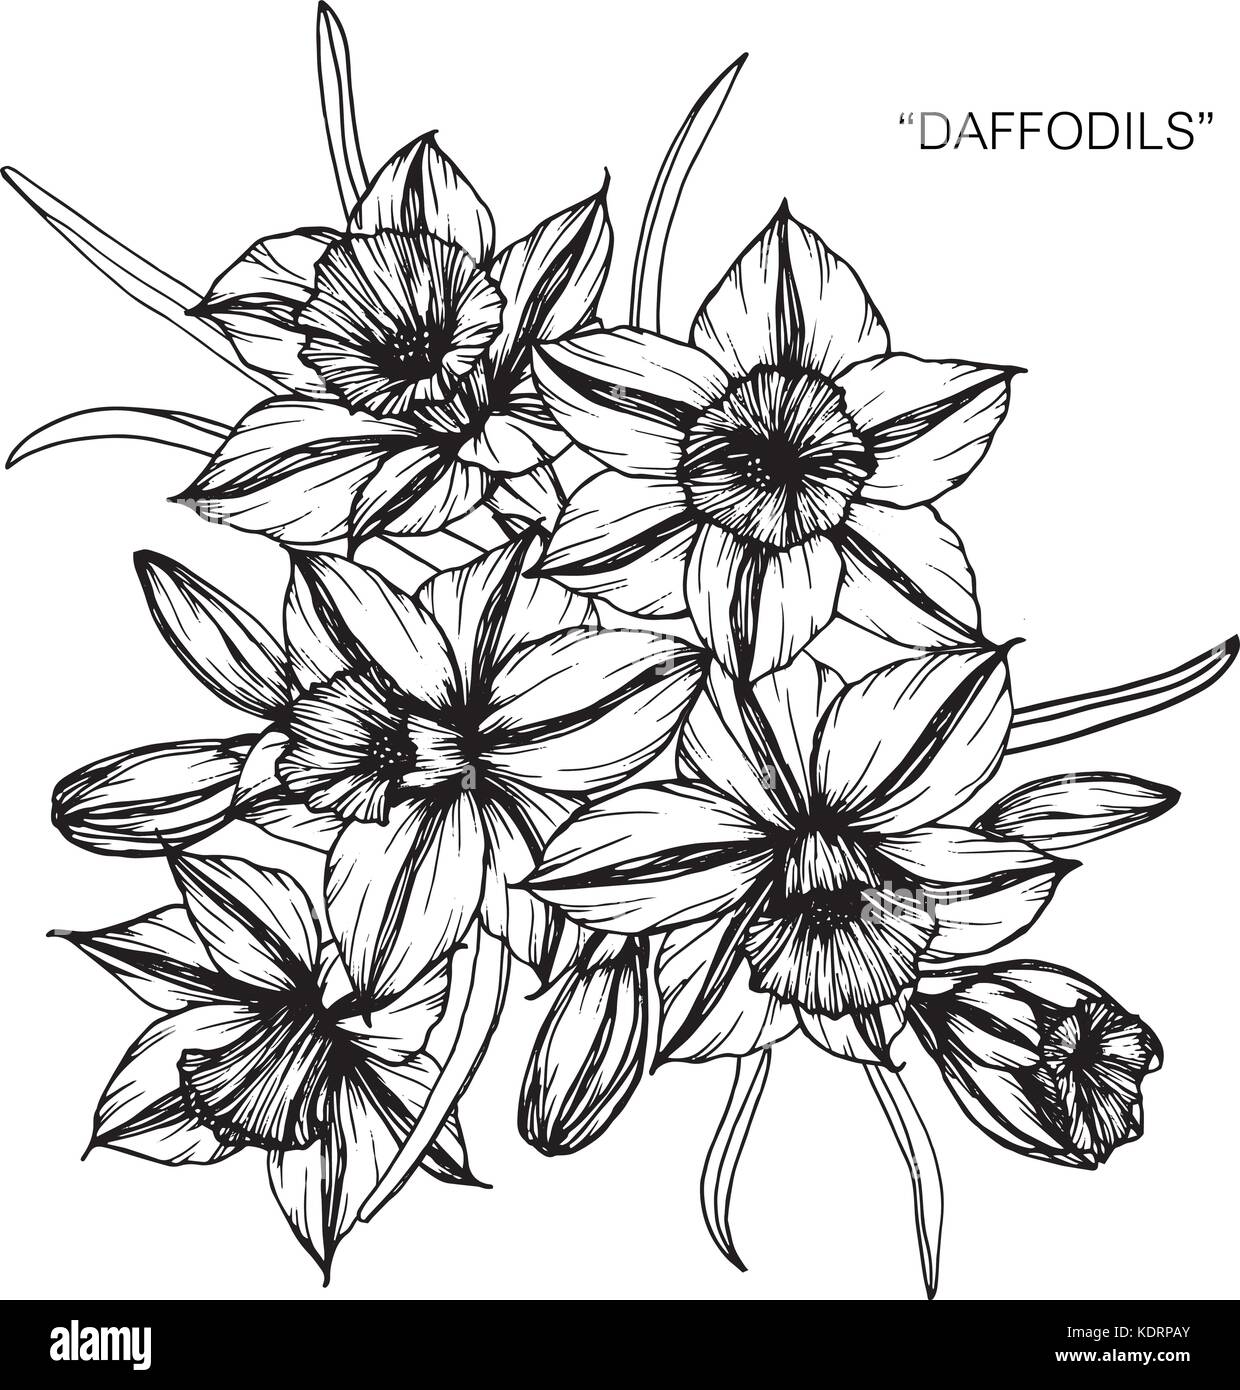 Daffodils : r/drawing